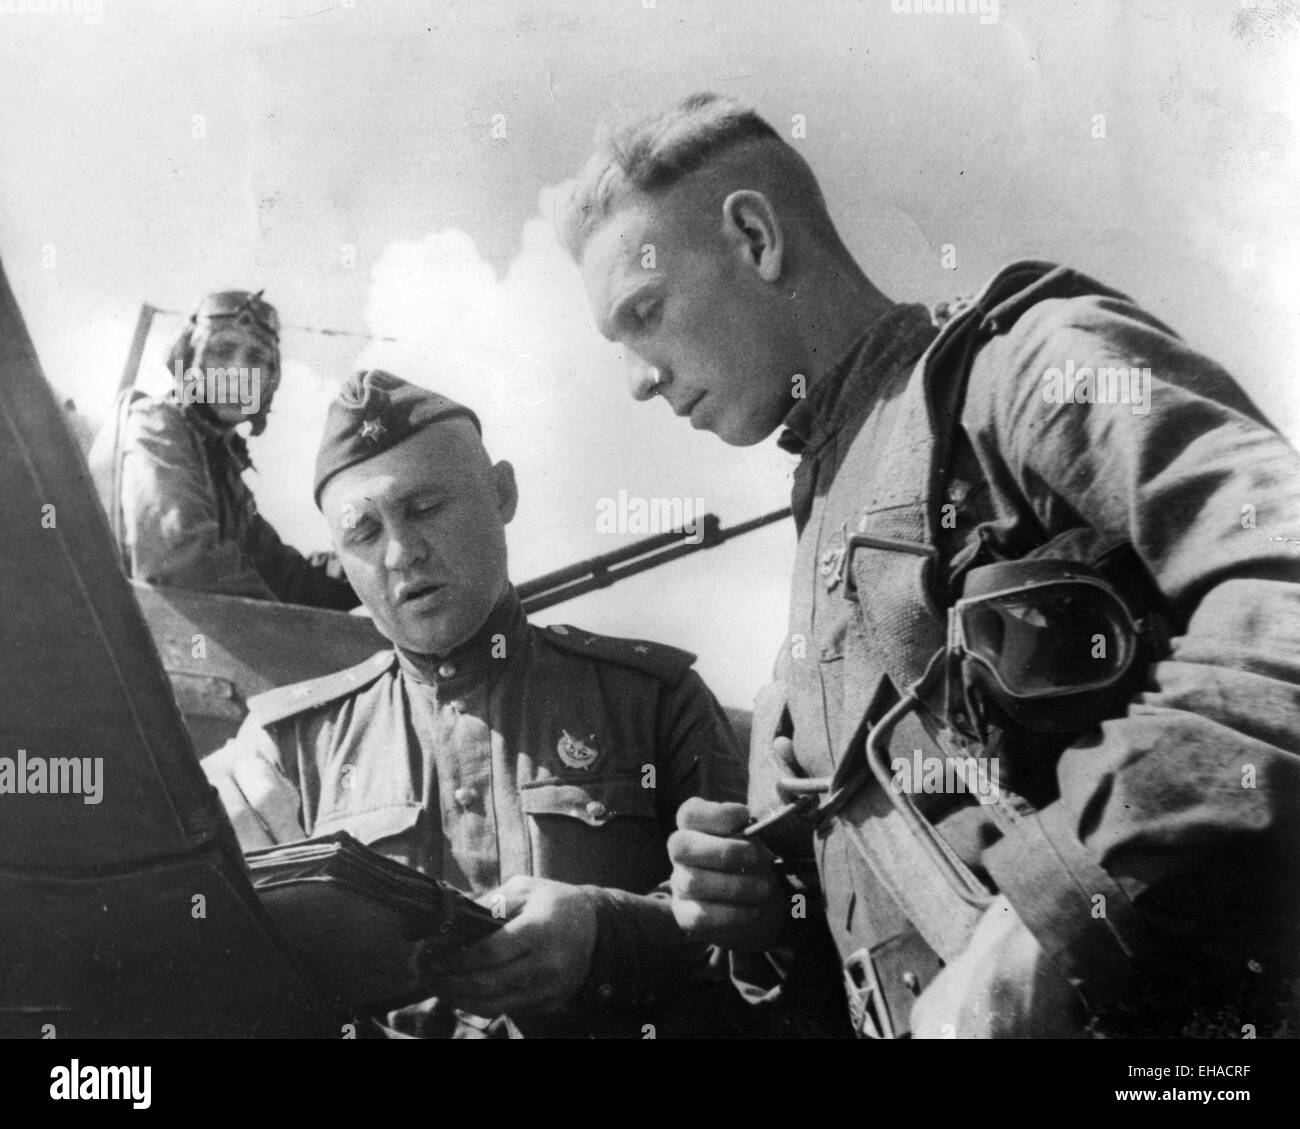 GLINKA FRATELLI aria sovietica aces Boris Glinka (centro) e fratello Dimitry Glinka a destra circa 1943 Foto Stock